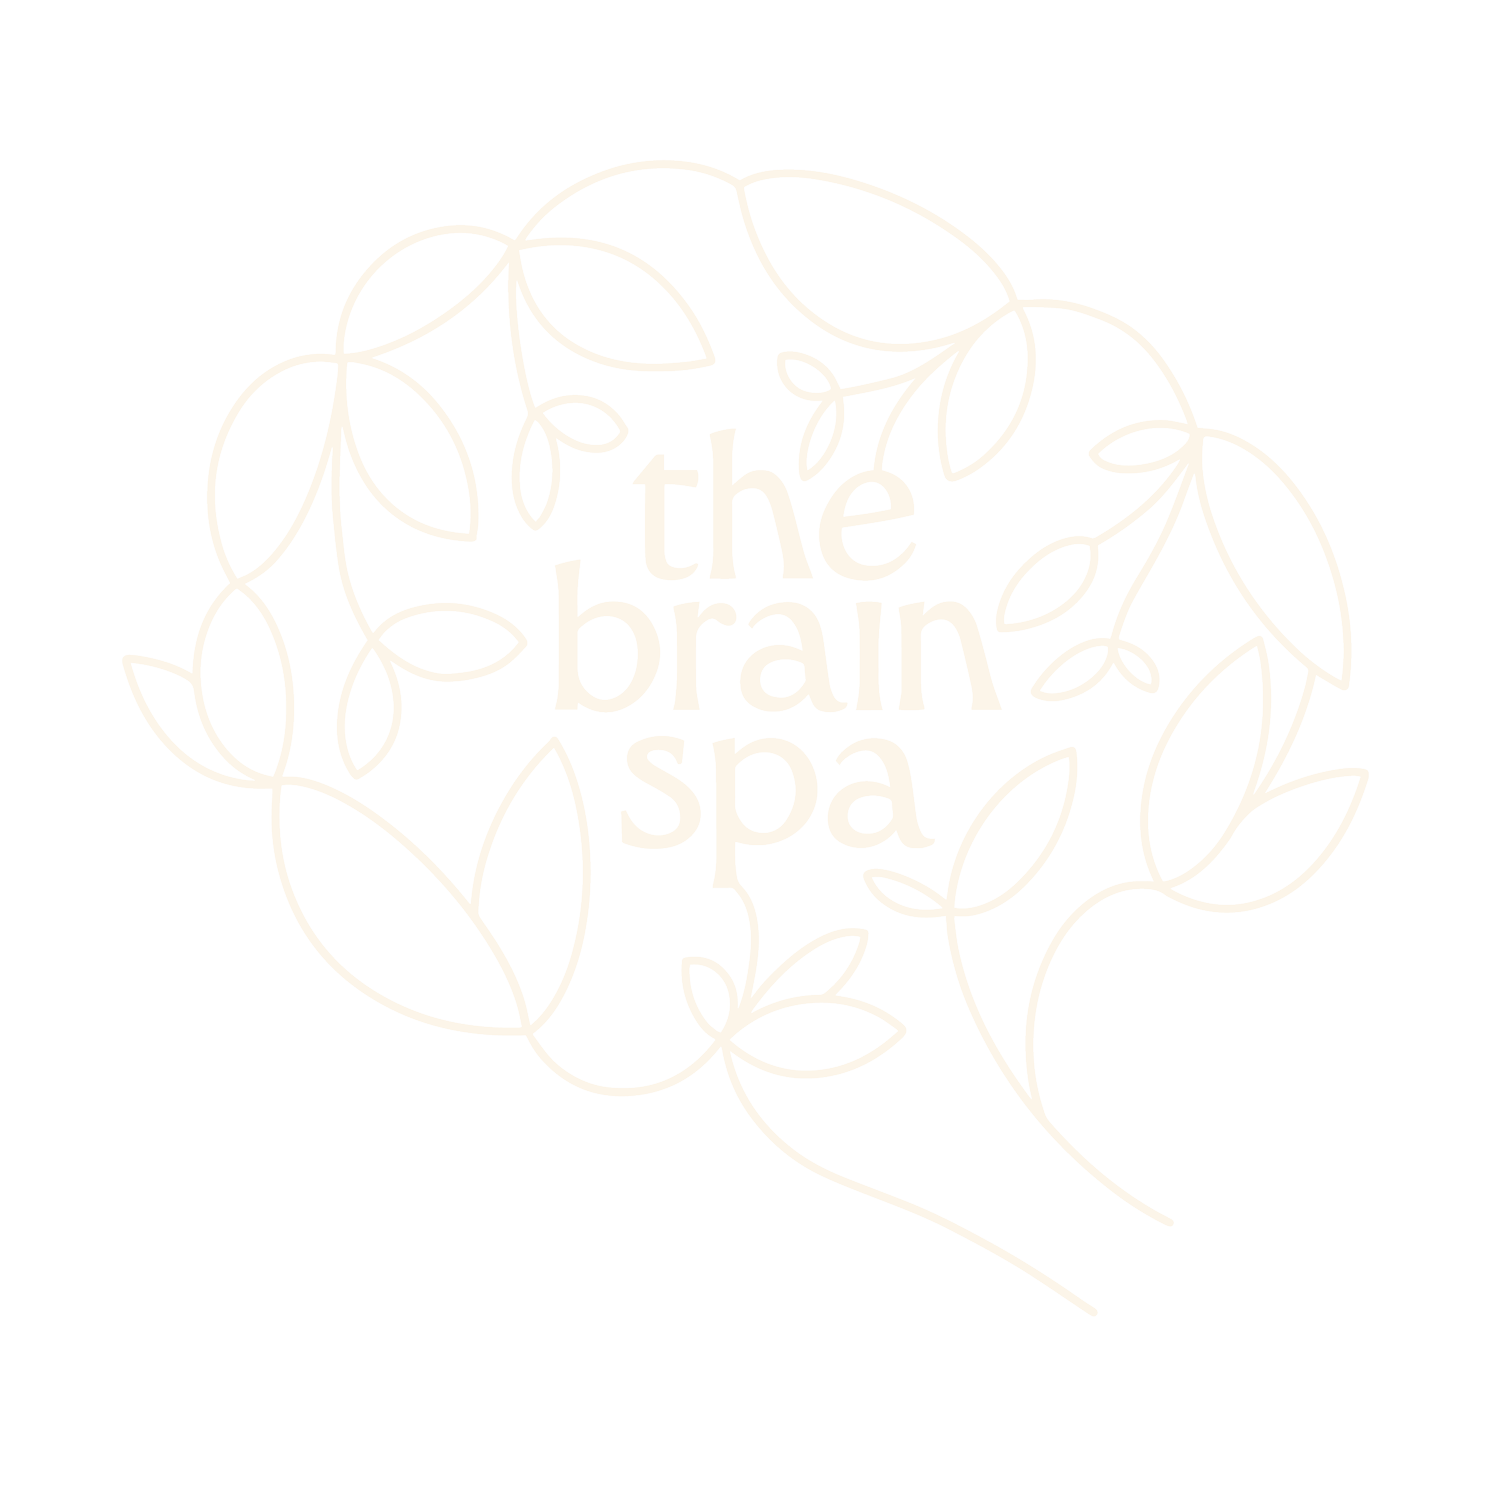 the brain spa